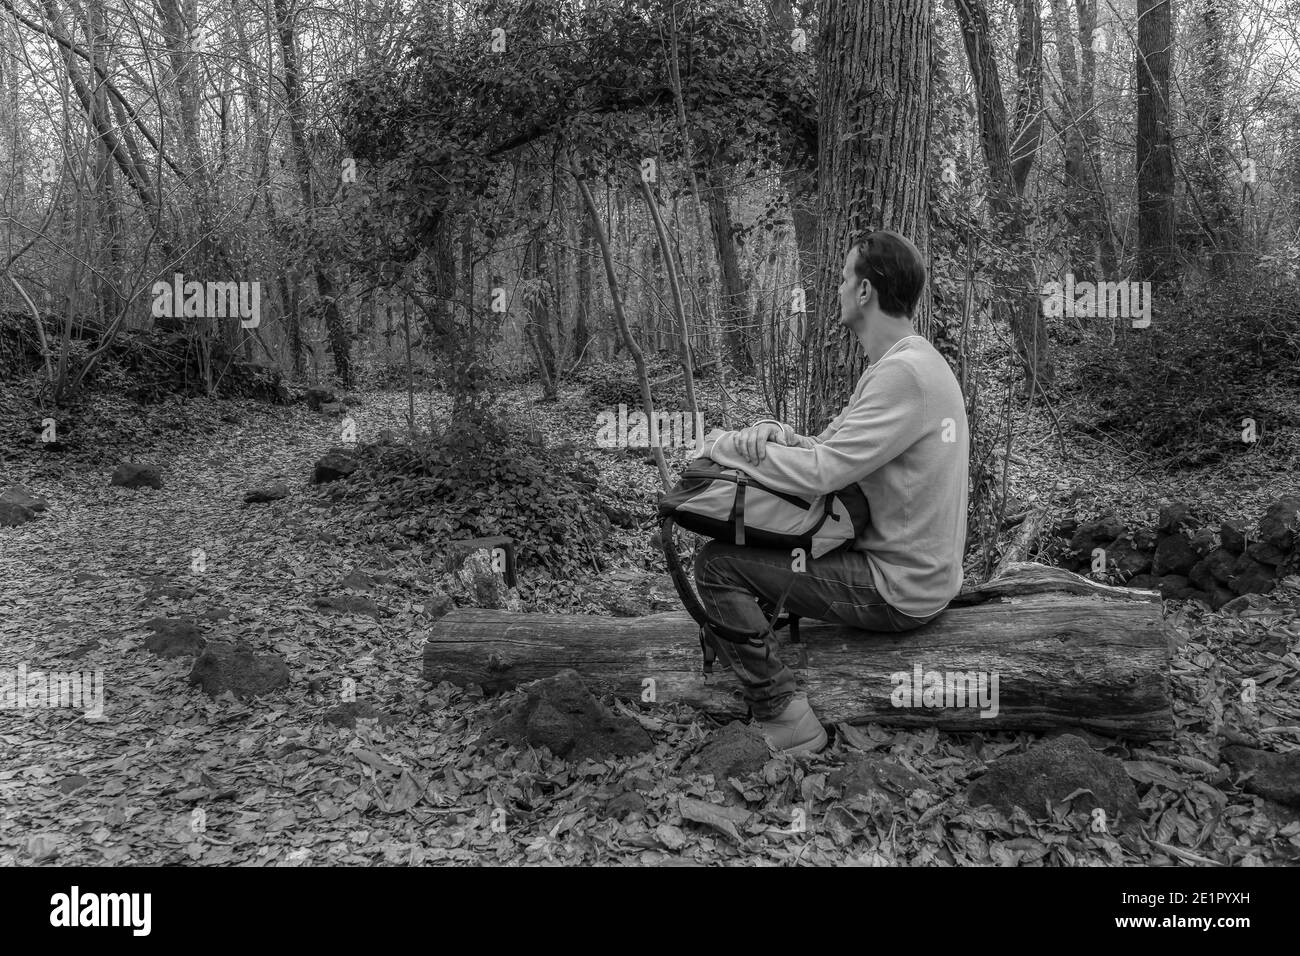 Mann sitzt mit Rucksack auf Wald Blick Horizont in Wald.Stylish Wanderer Outdoor Lifestyle.Travel Wanderlust Concept.Schwarz-weiß Fotografie wit Stockfoto